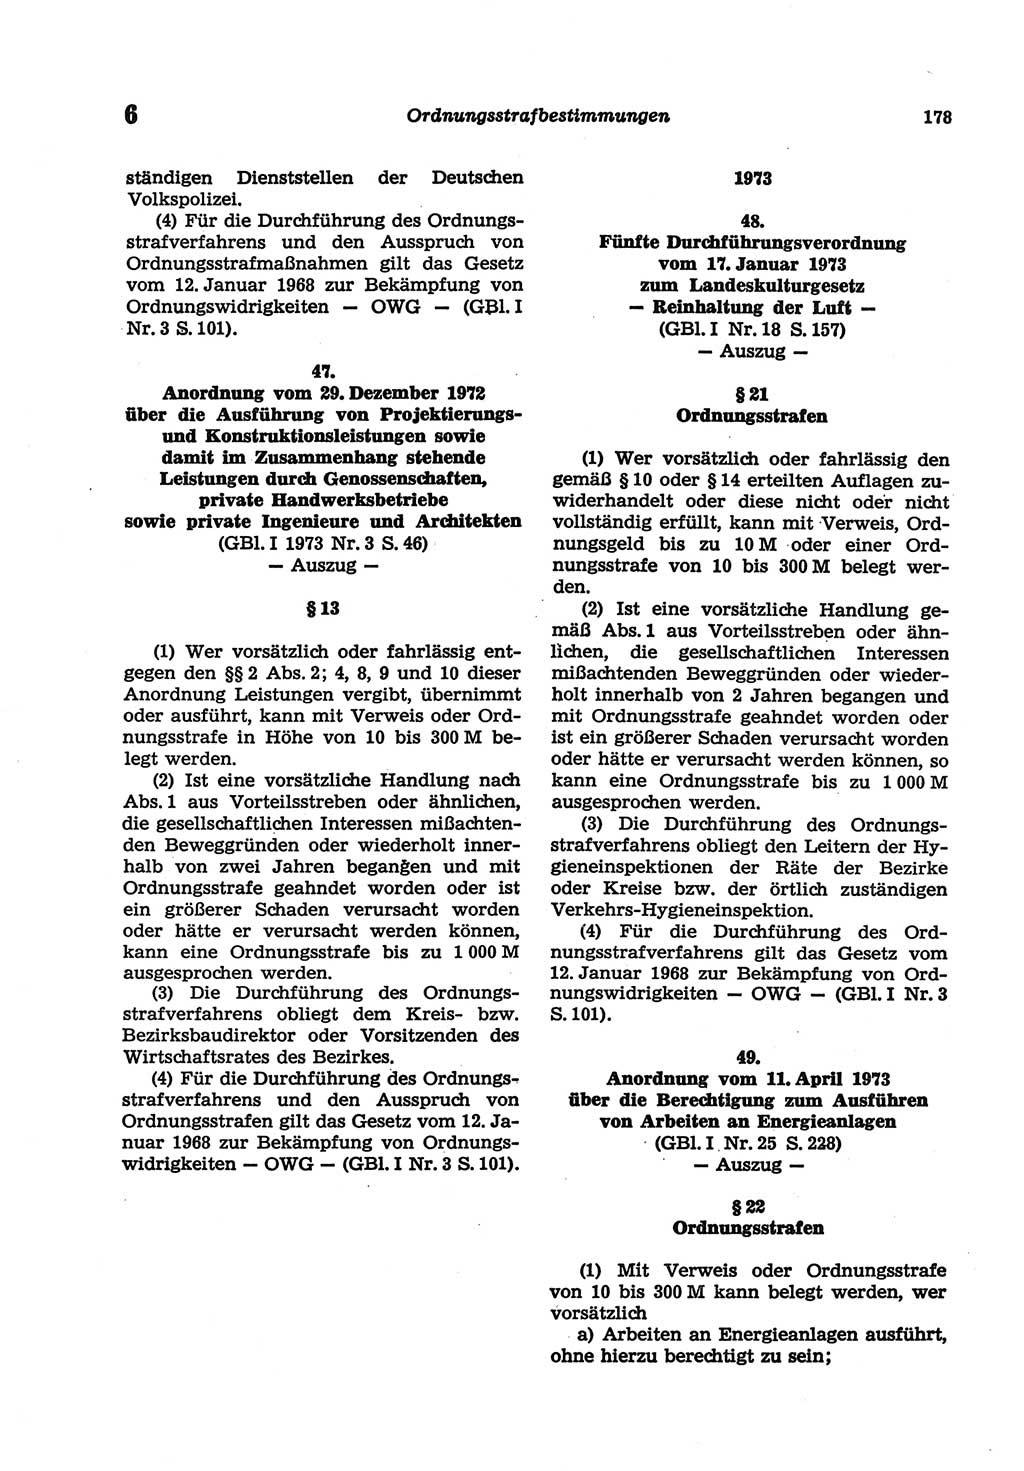 Strafgesetzbuch (StGB) der Deutschen Demokratischen Republik (DDR) und angrenzende Gesetze und Bestimmungen 1977, Seite 178 (StGB DDR Ges. Best. 1977, S. 178)